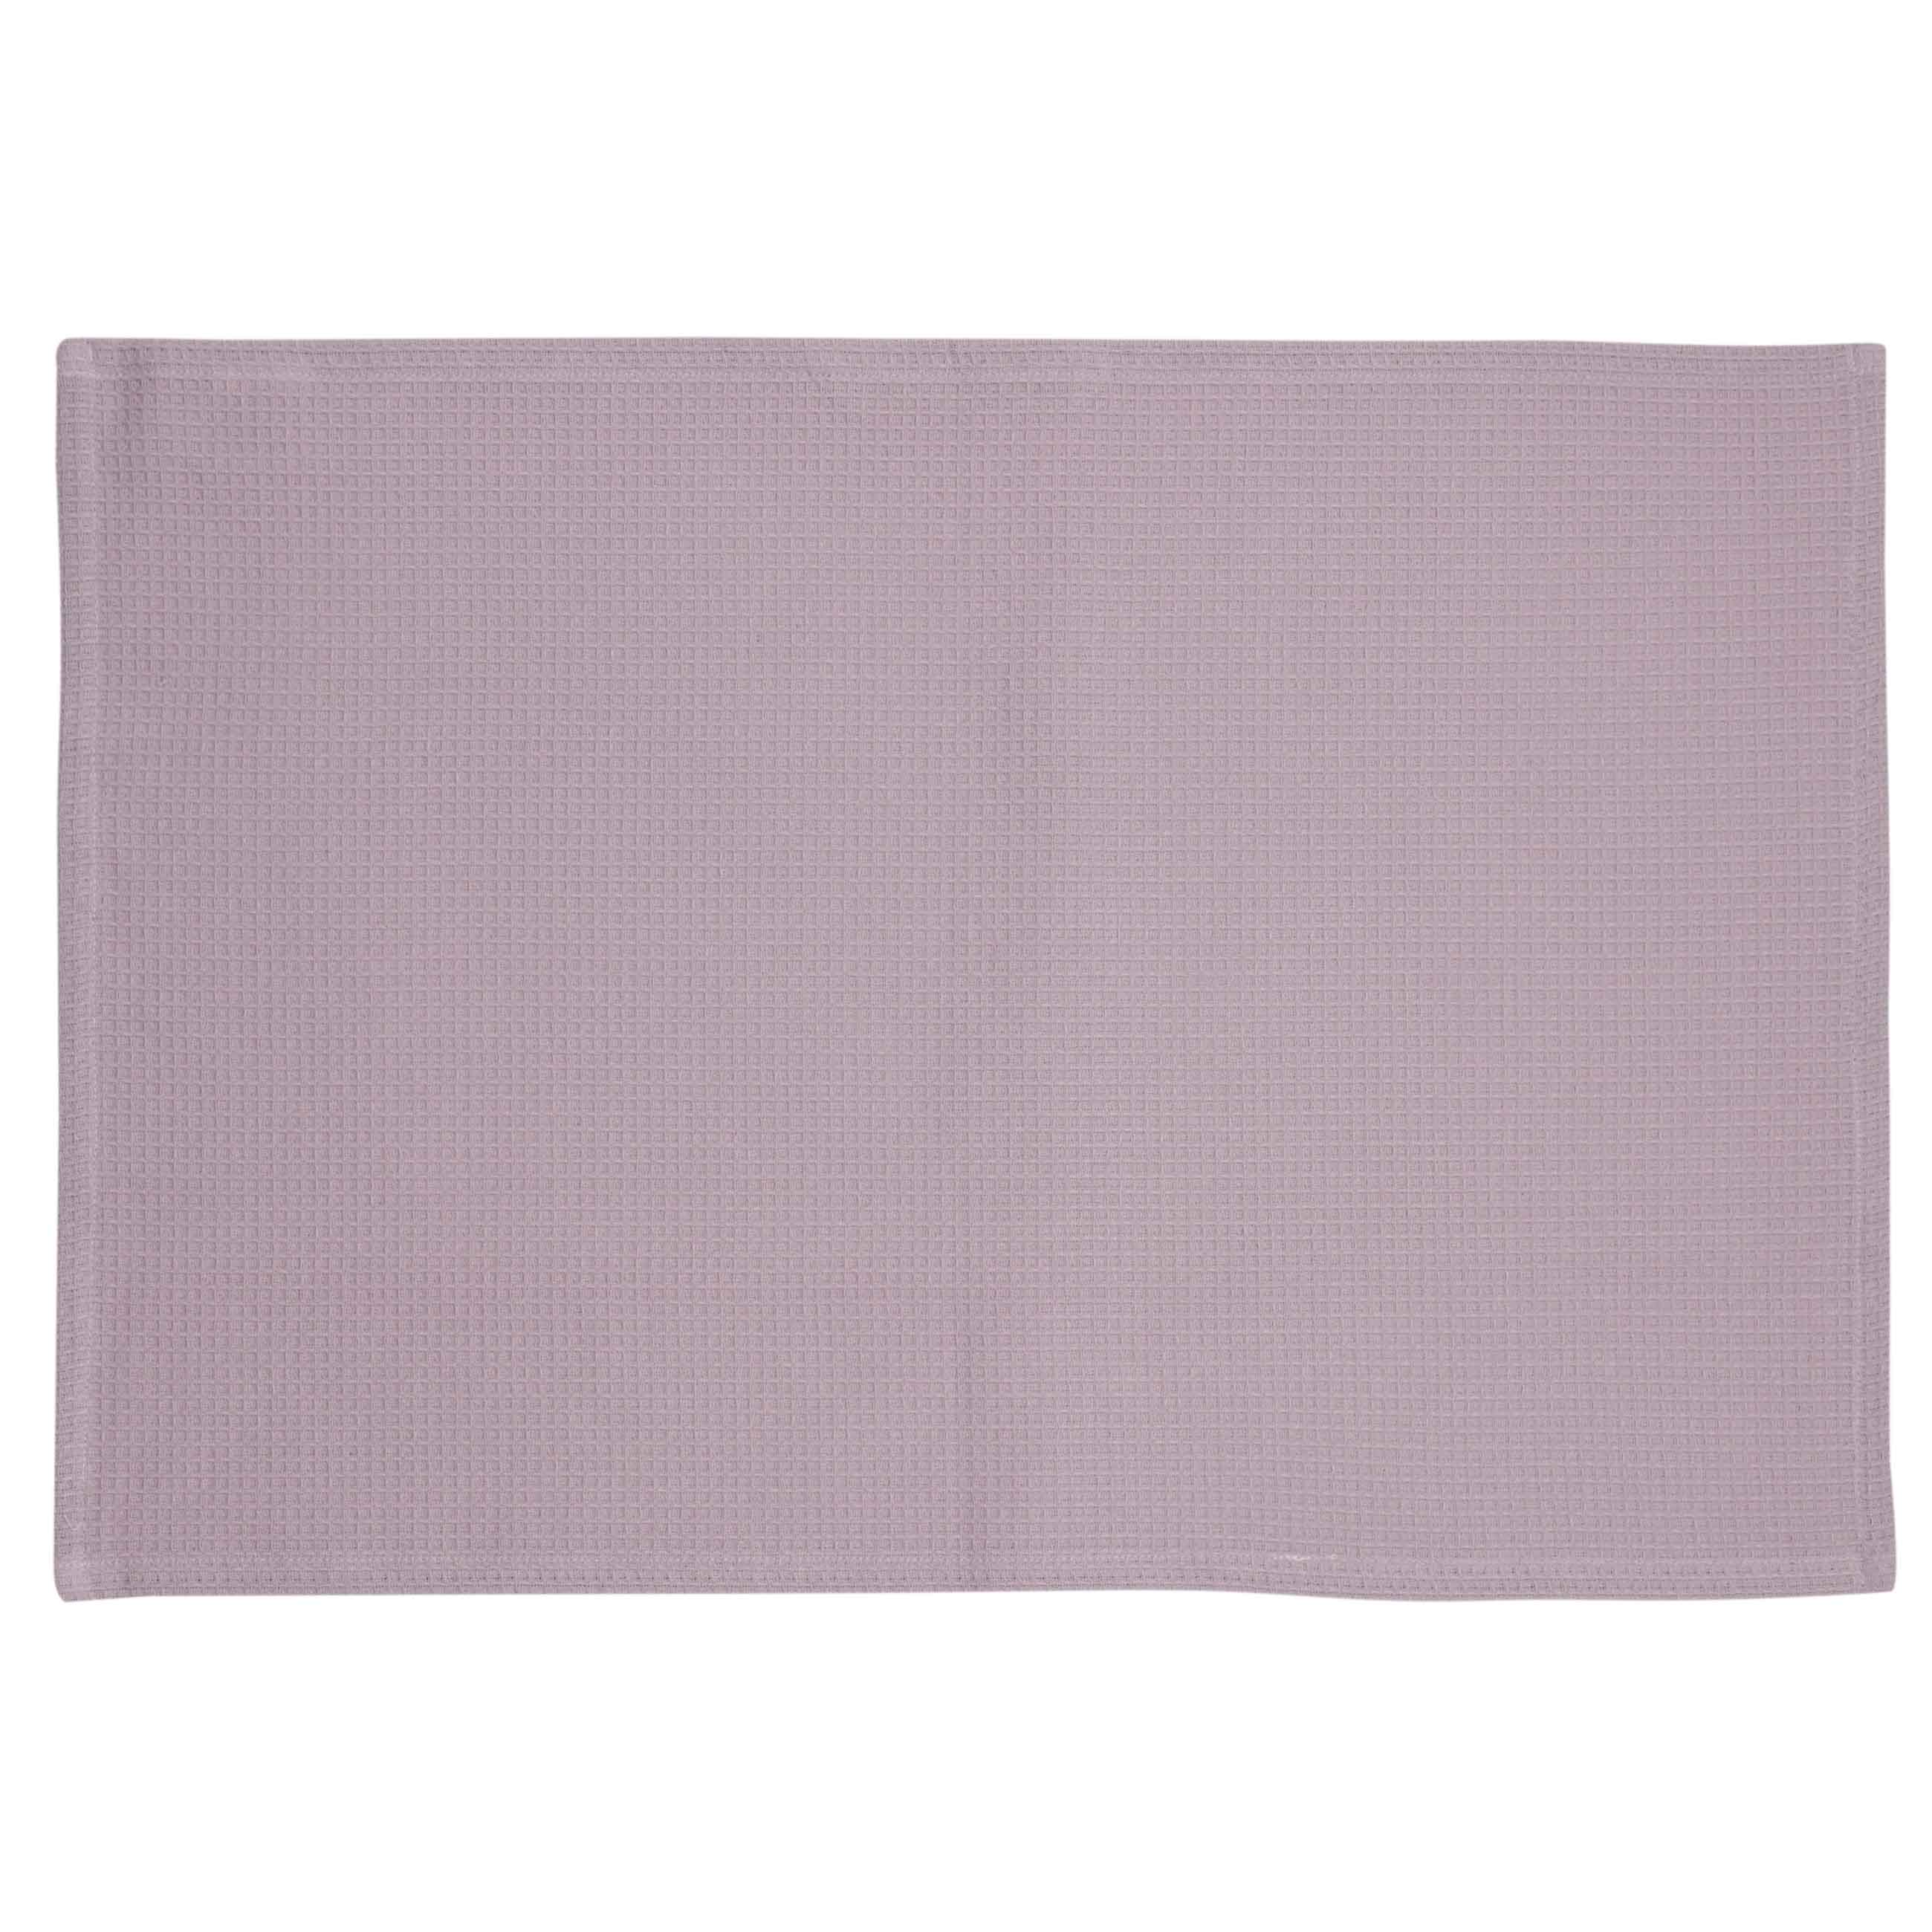 Kitchen towel, 40x60 cm, 2 pcs, cotton, white/purple, Flowers, Bloome изображение № 4